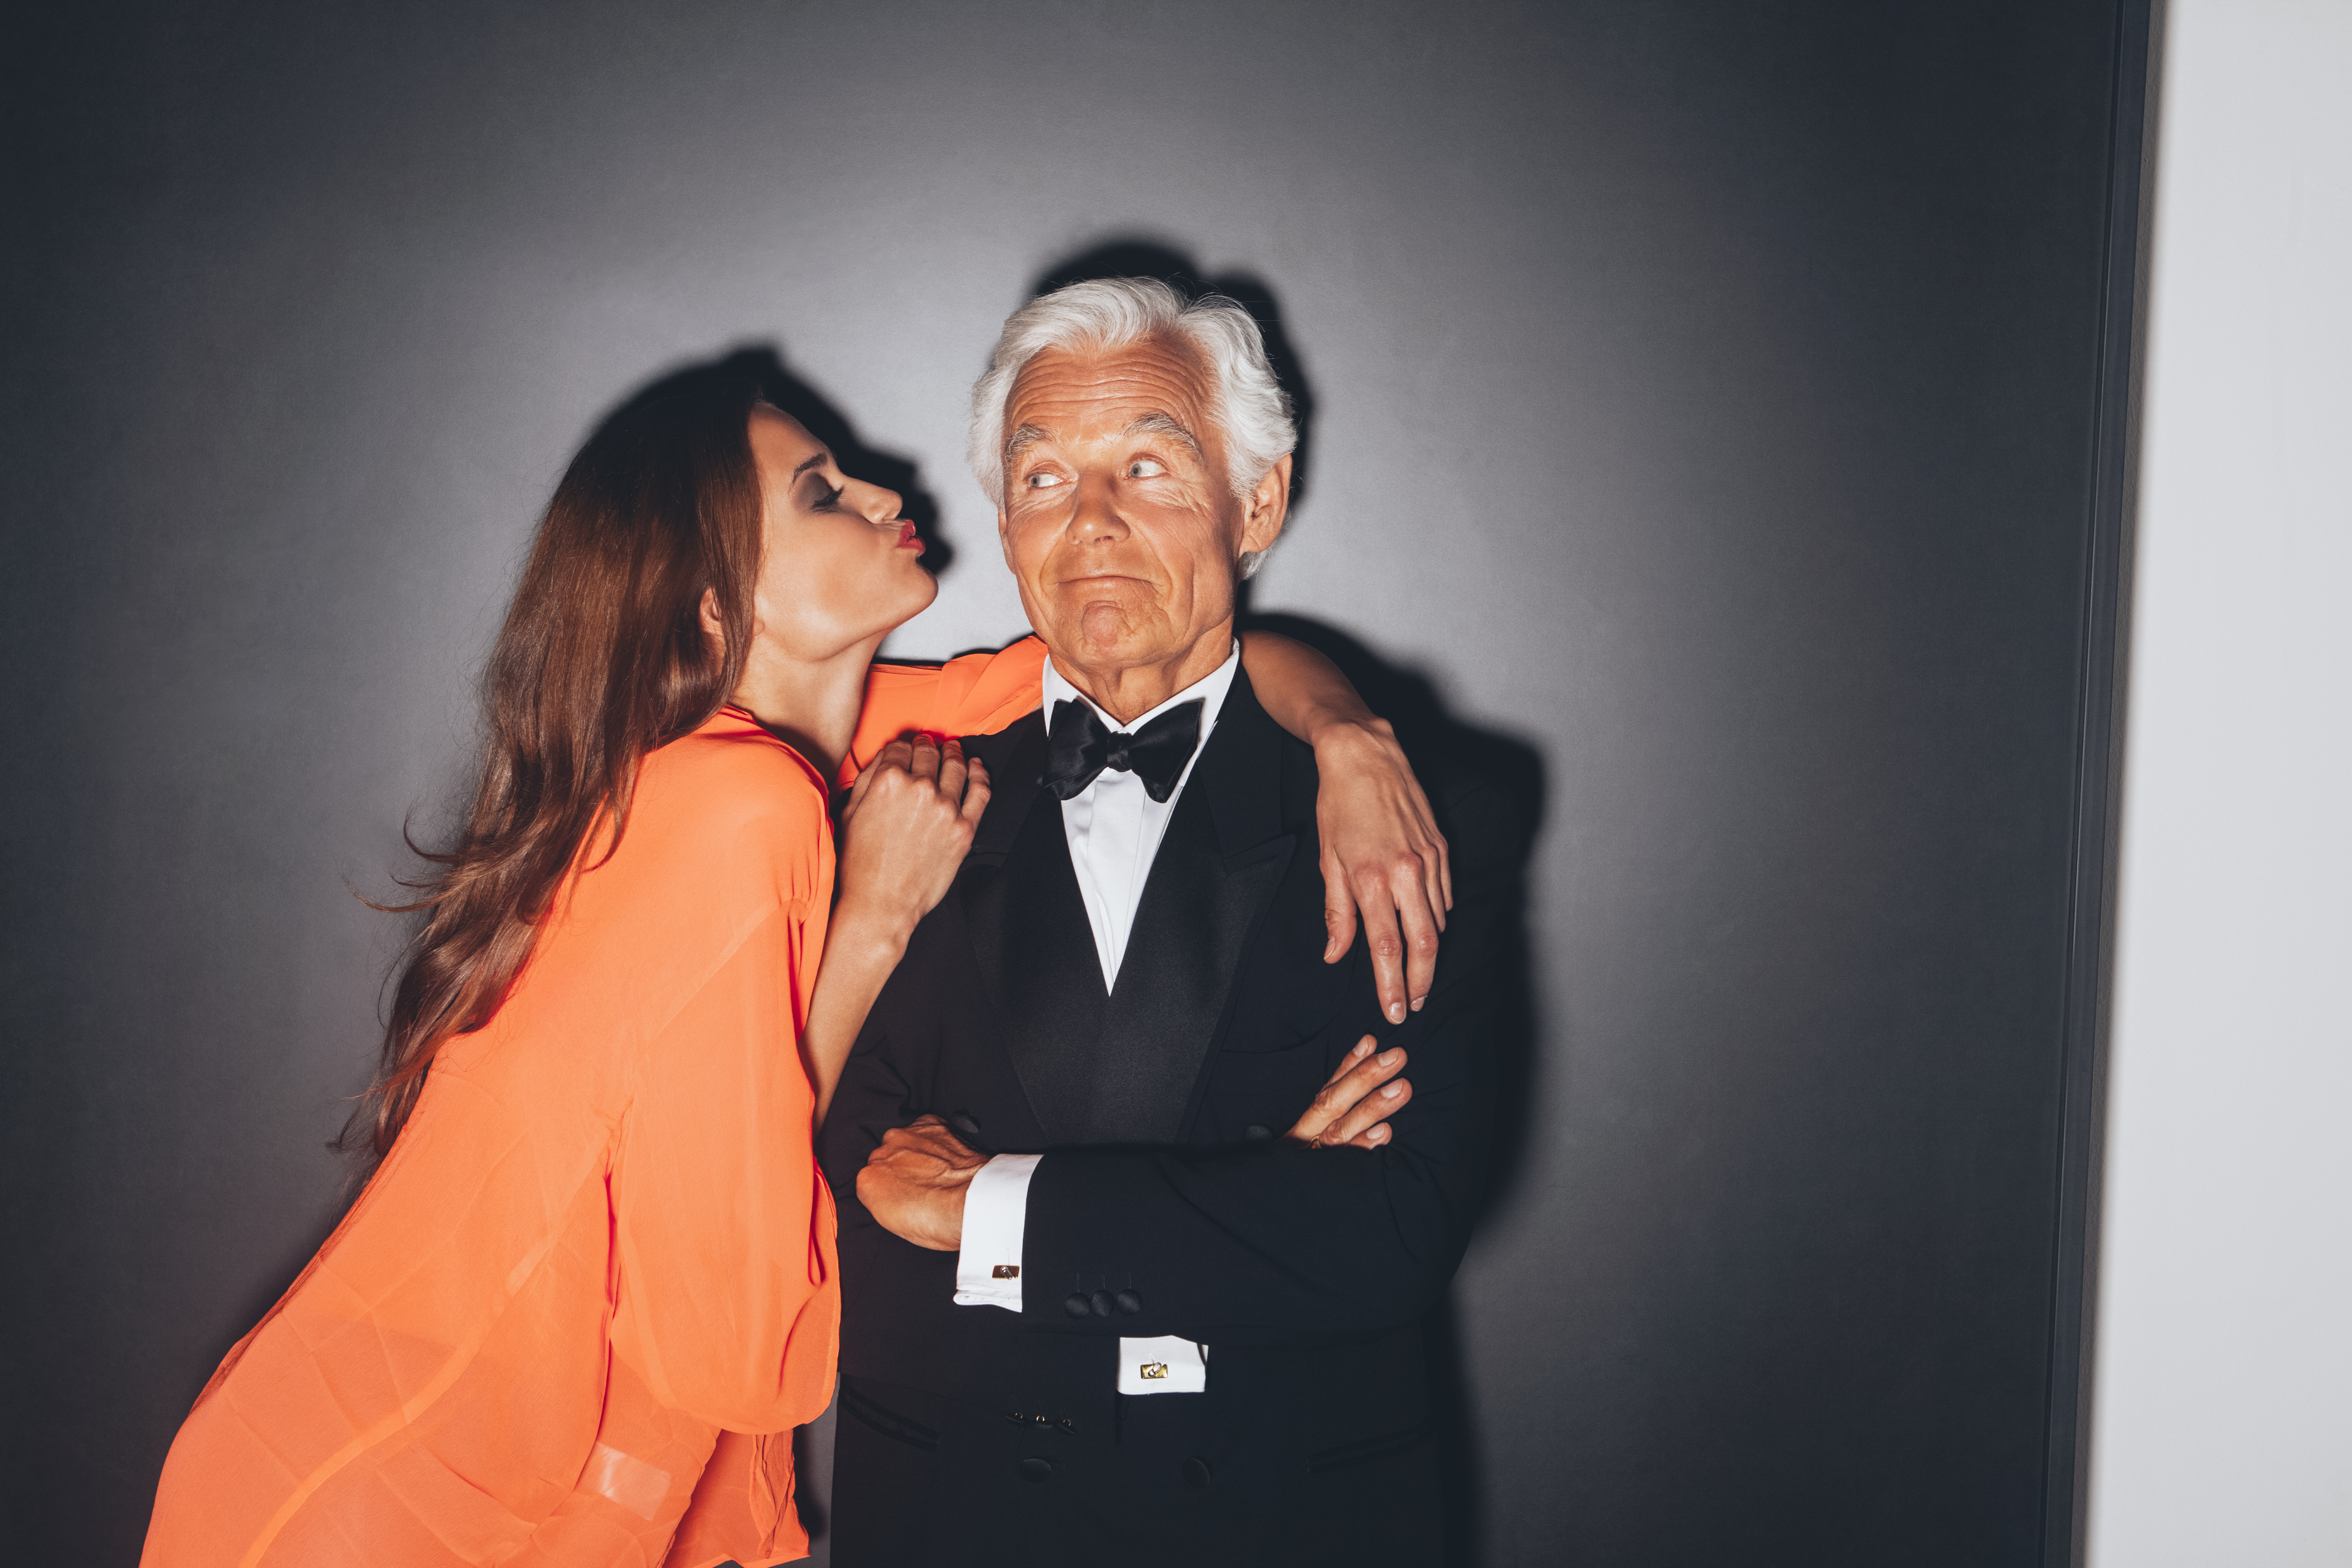 Tips For Older Men Dating Younger Women